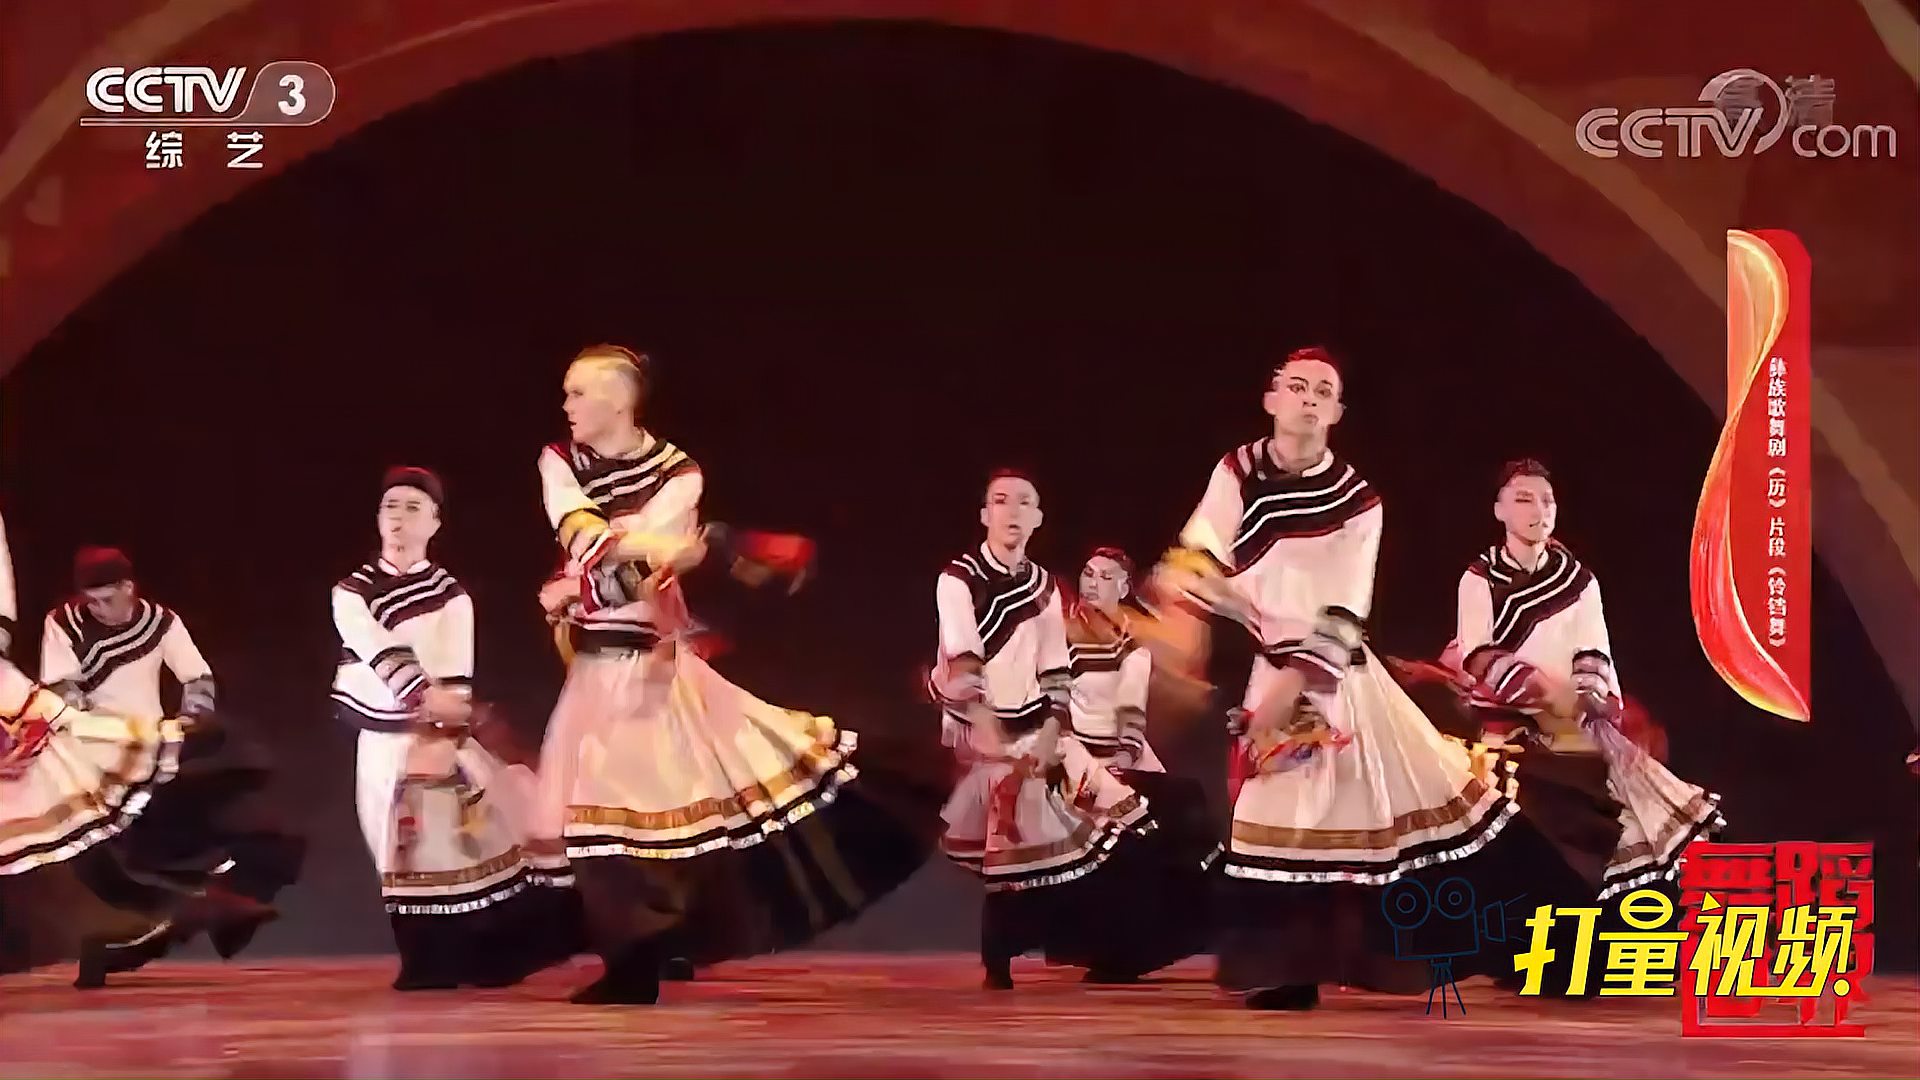 彝族歌舞剧《历》片段《铃铛舞》欢快洒脱,相当精彩!丨舞蹈世界